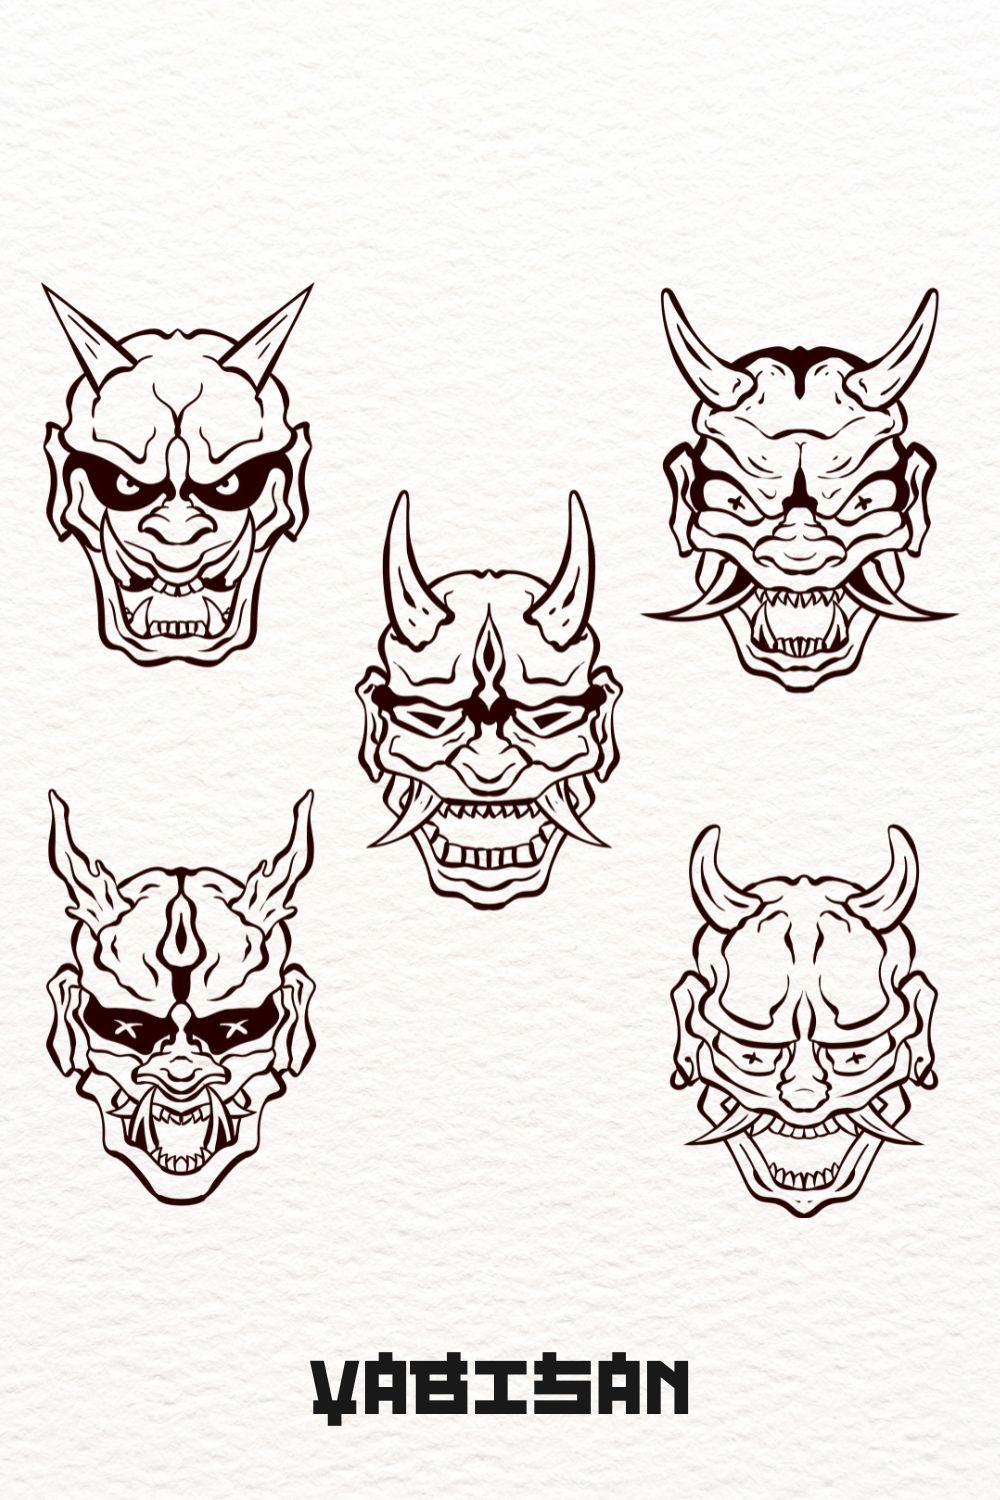 Oni Hannya Mask Art set – Outlined pinterest preview image.